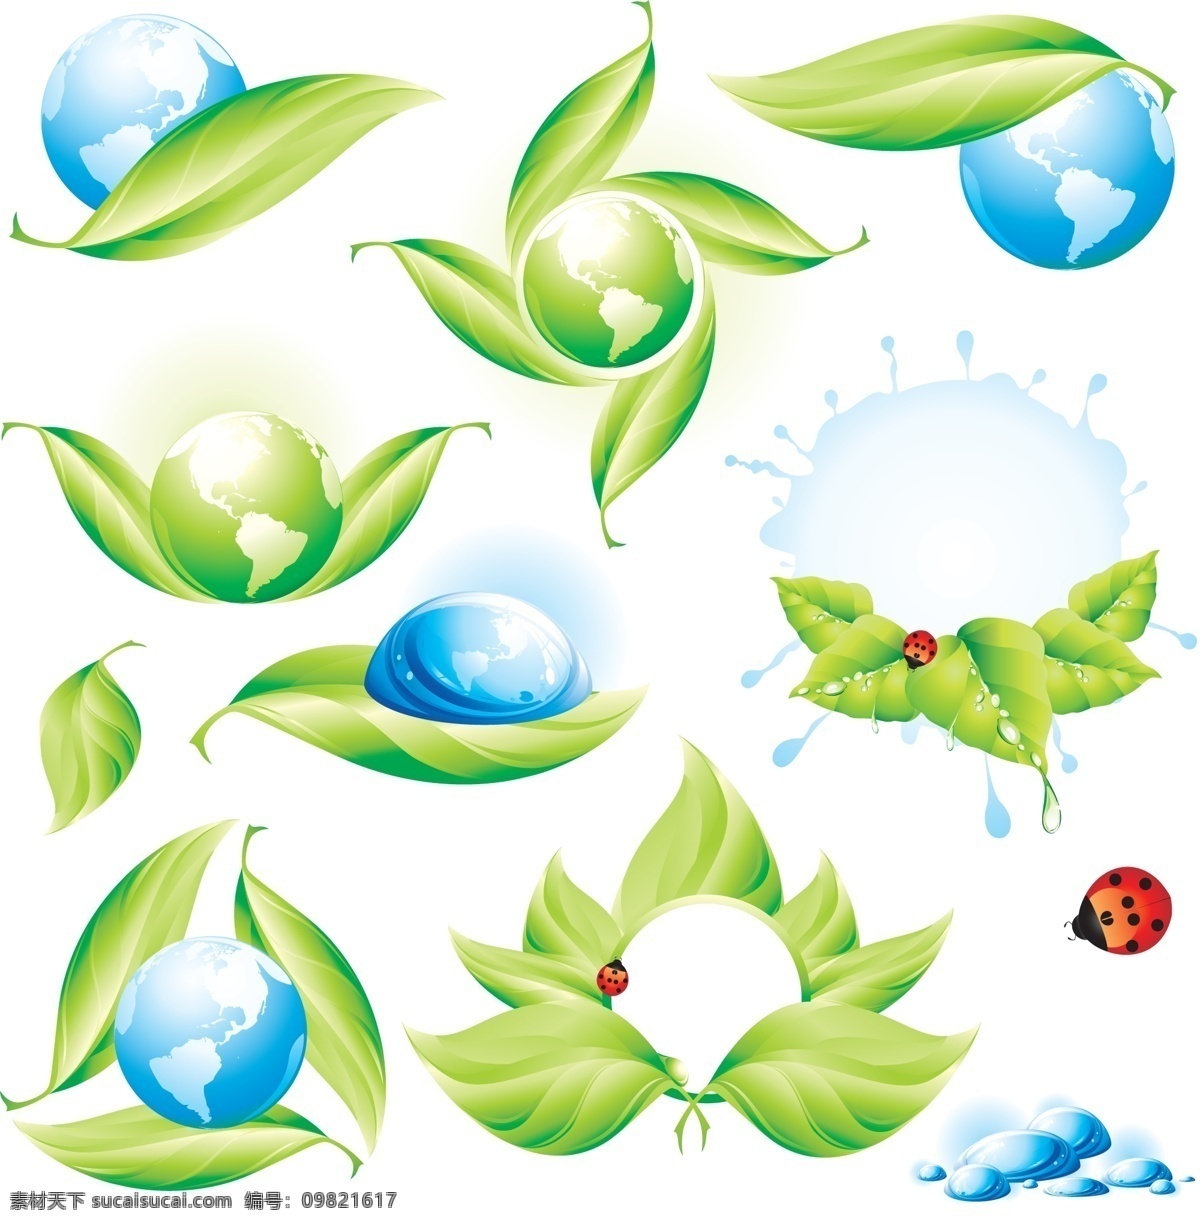 绿色 生态环境 图标 矢量图 地球 绿叶 瓢虫 水珠 水渍 低碳标志 其他矢量图